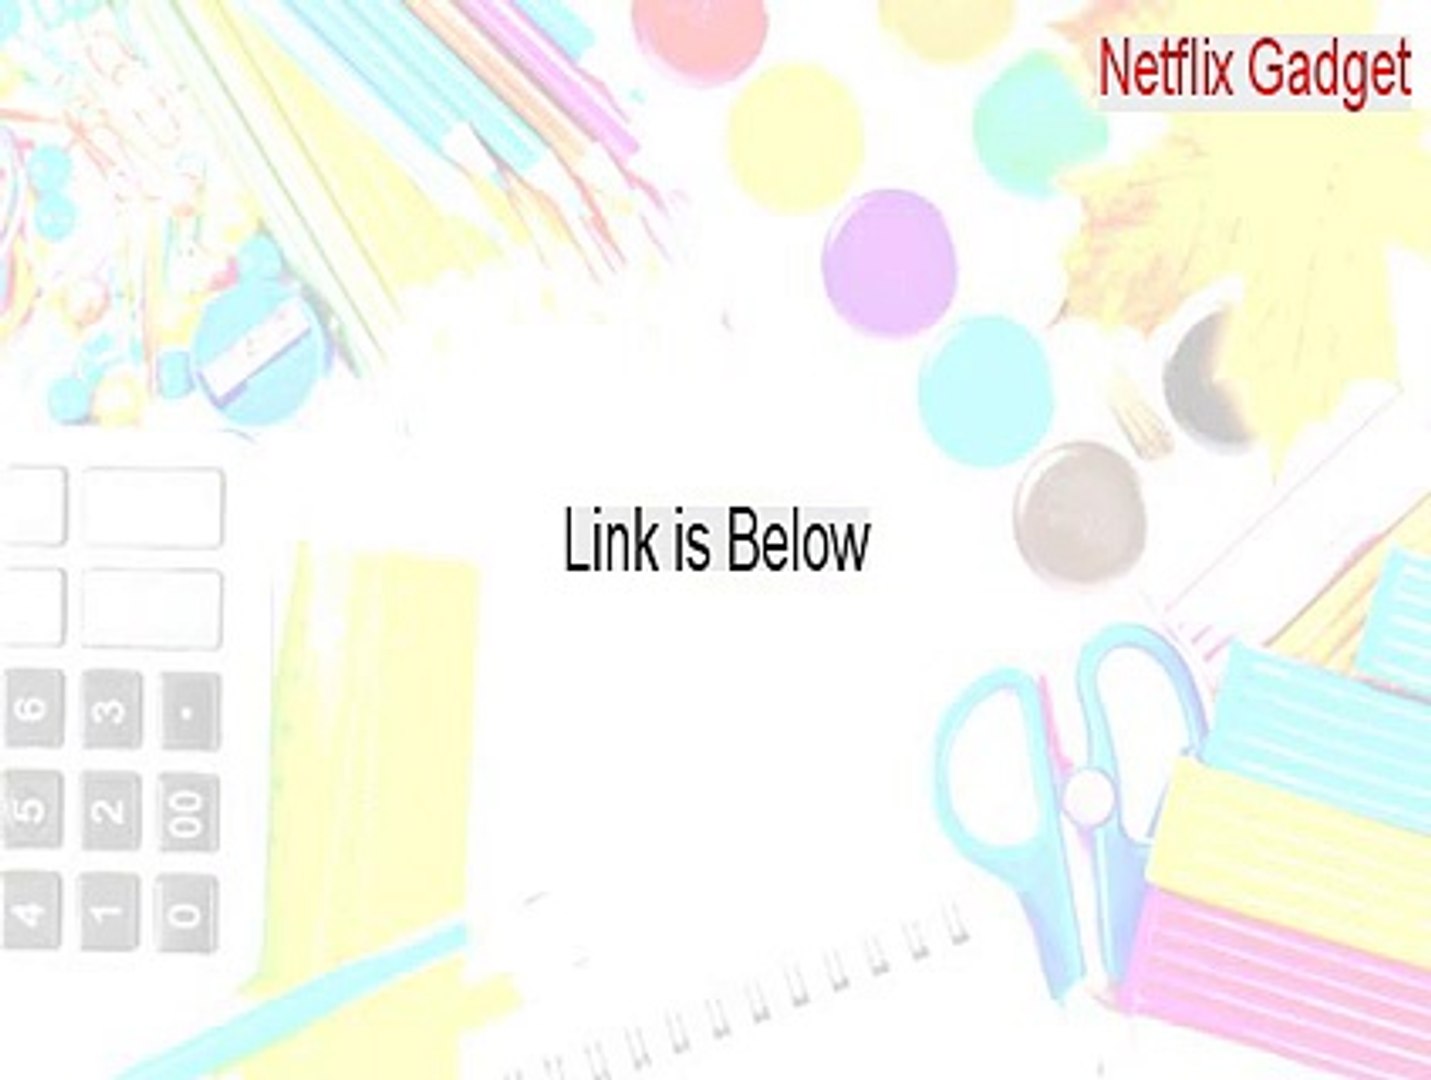 Netflix Gadget Full - netflix gadget vista [2015]